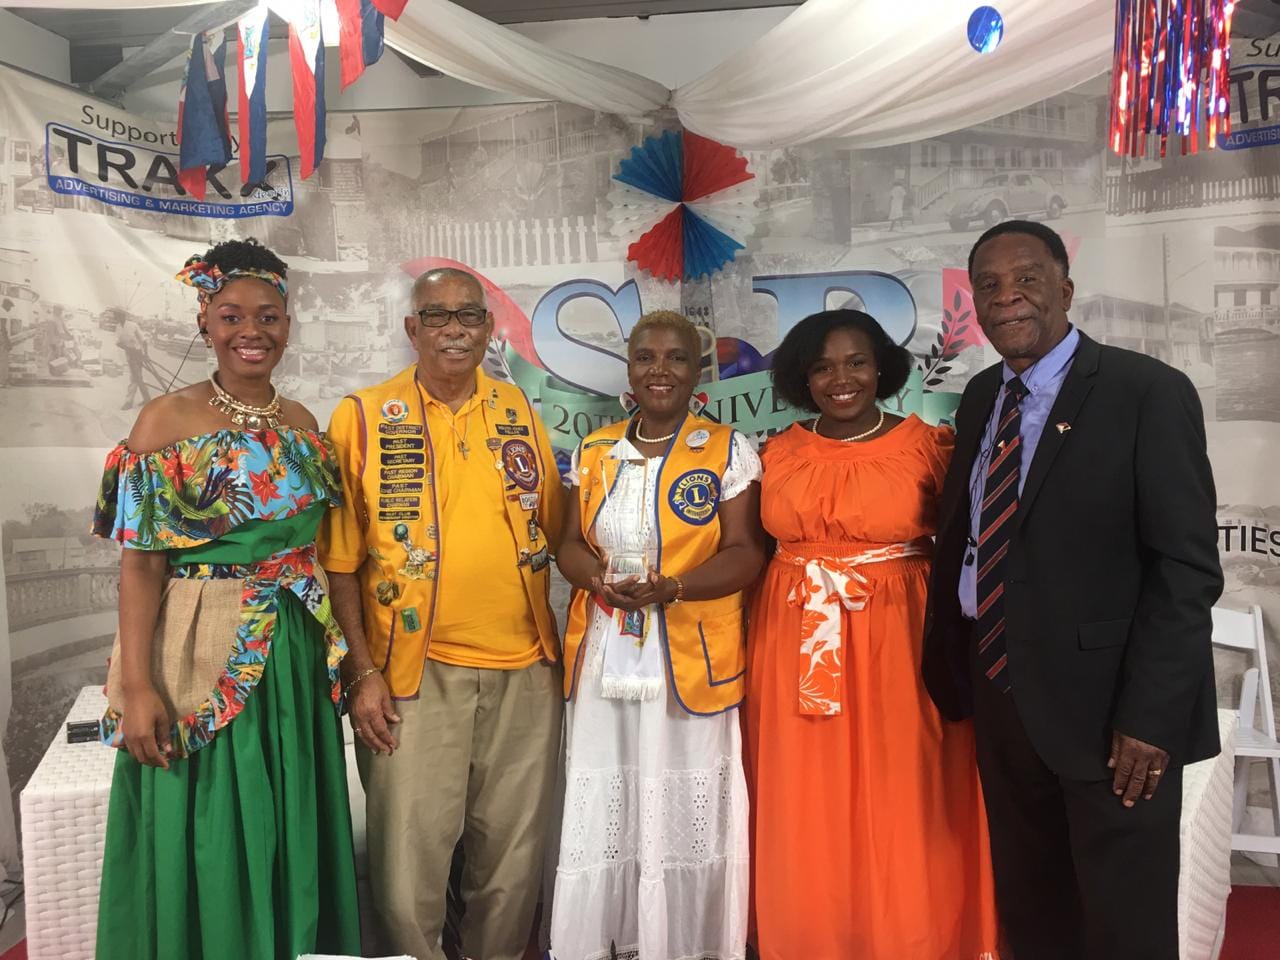 Sint Maarten Lions Club received "UNSUNG HEROES" Award